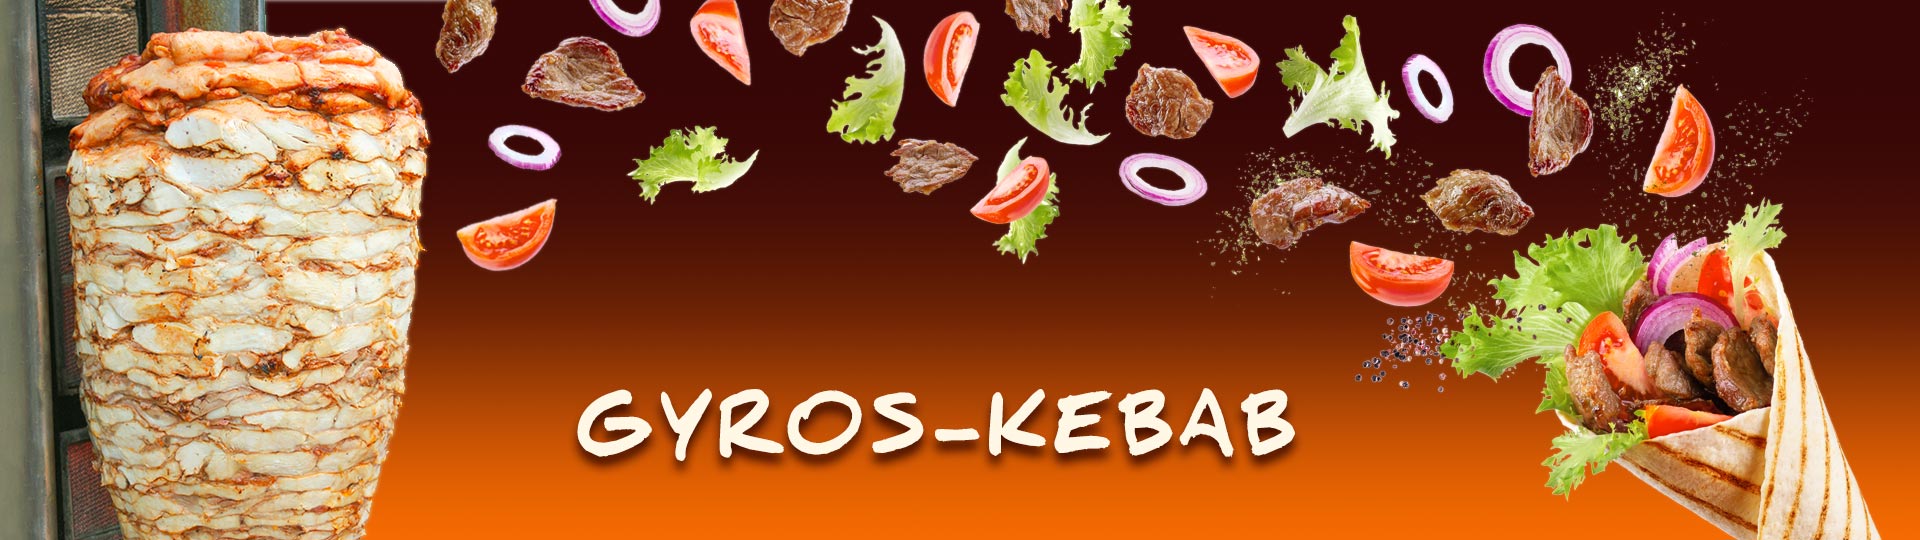 gyros-kebab fejléc bg